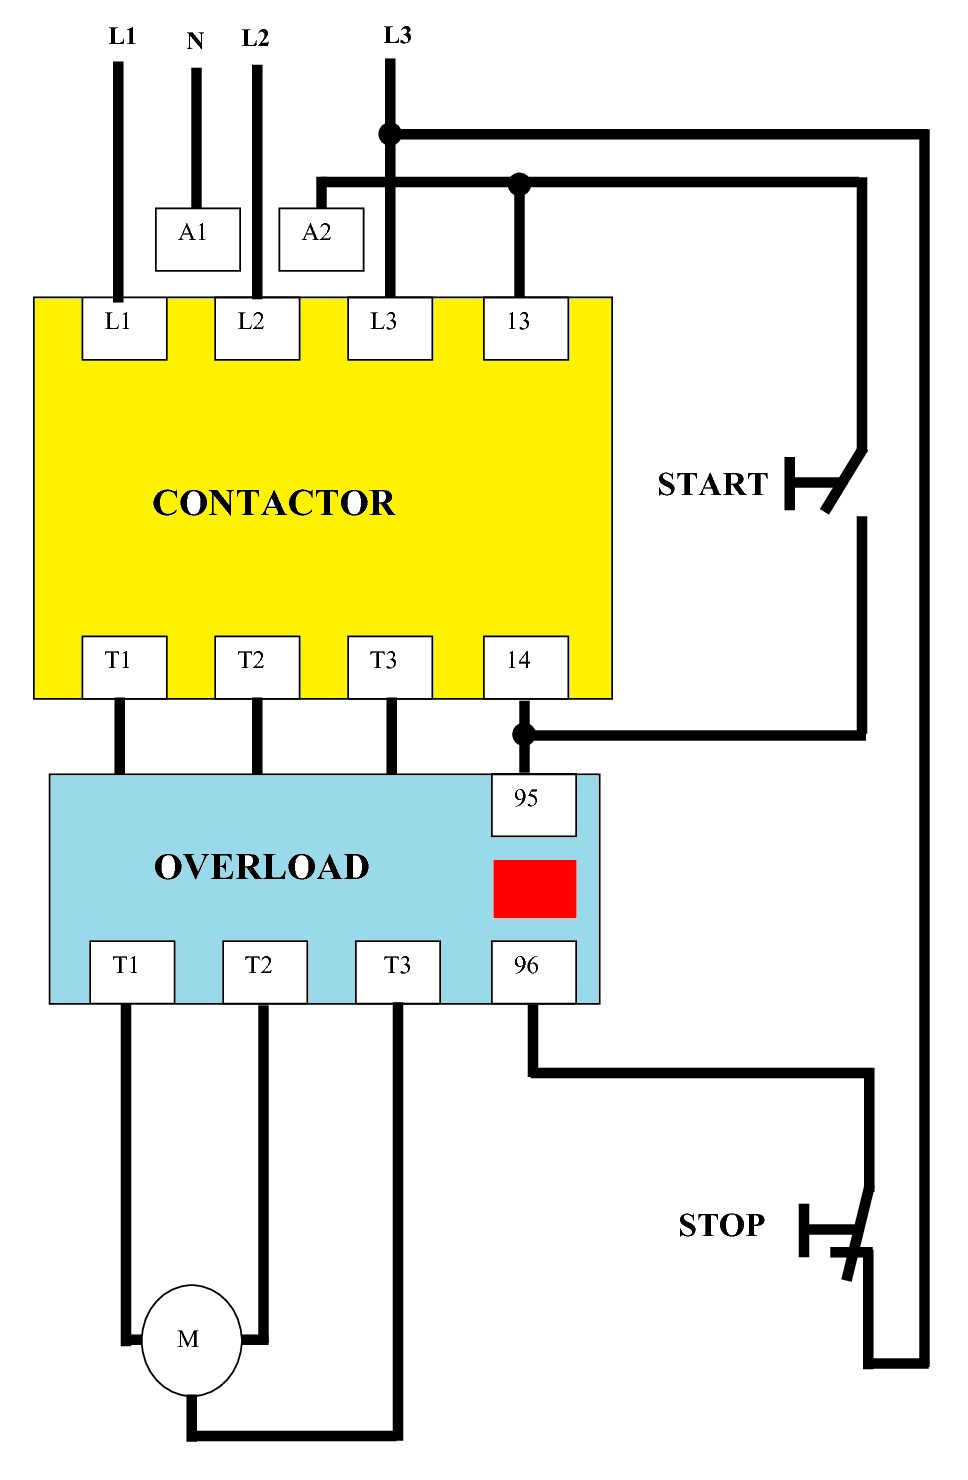 3 Phase Motor Starter Wiring Diagram Pdf | Wiring Diagram